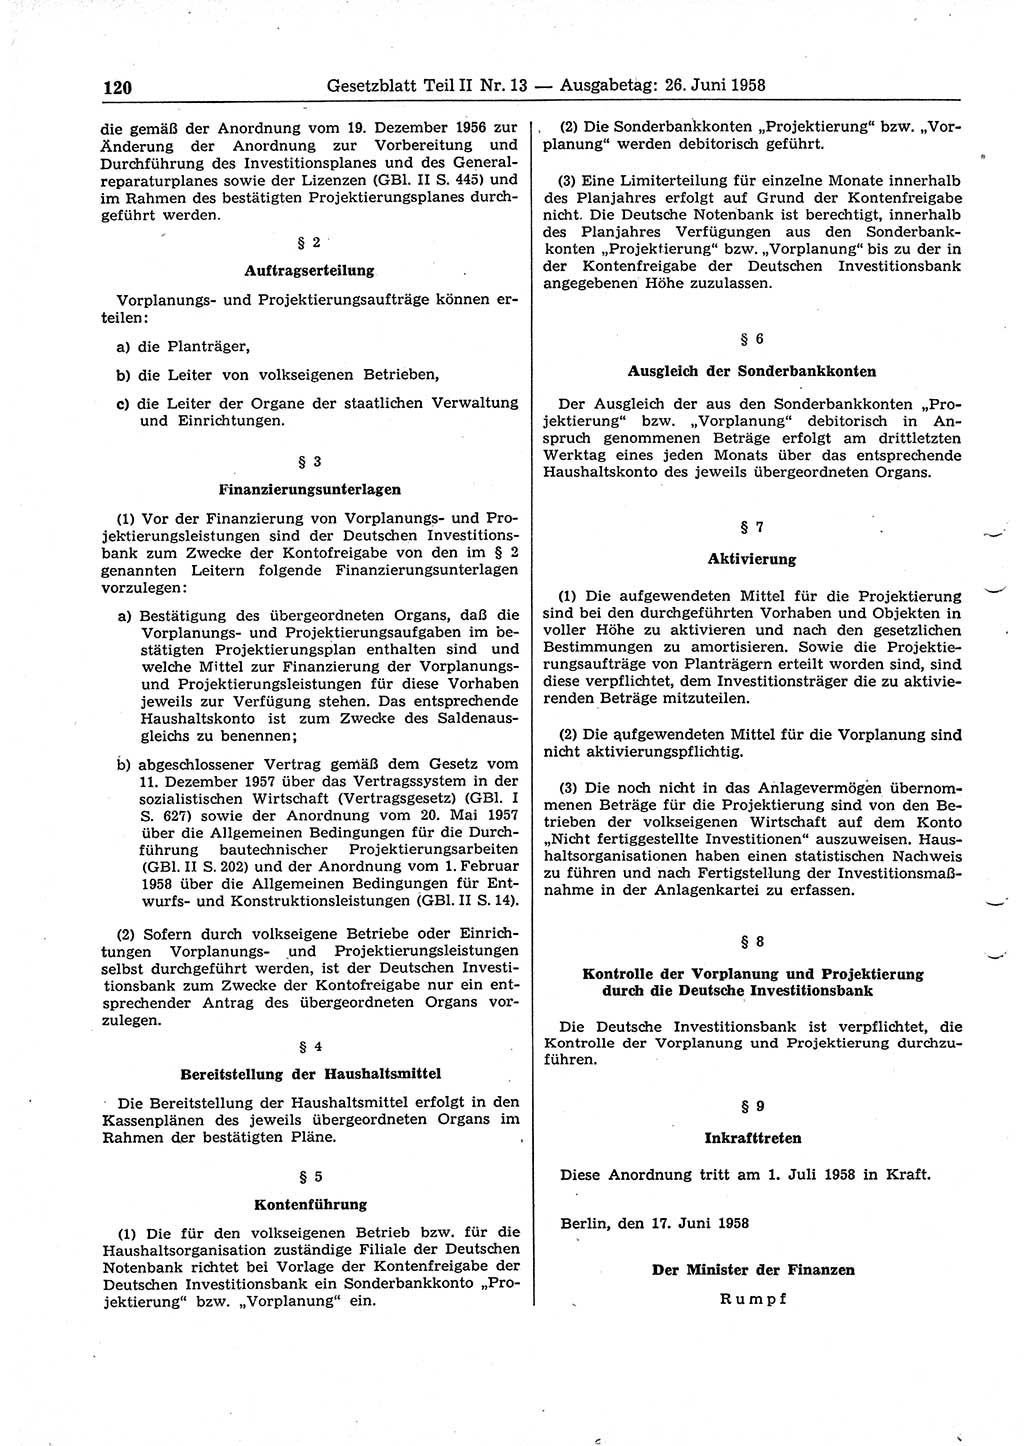 Gesetzblatt (GBl.) der Deutschen Demokratischen Republik (DDR) Teil ⅠⅠ 1958, Seite 120 (GBl. DDR ⅠⅠ 1958, S. 120)